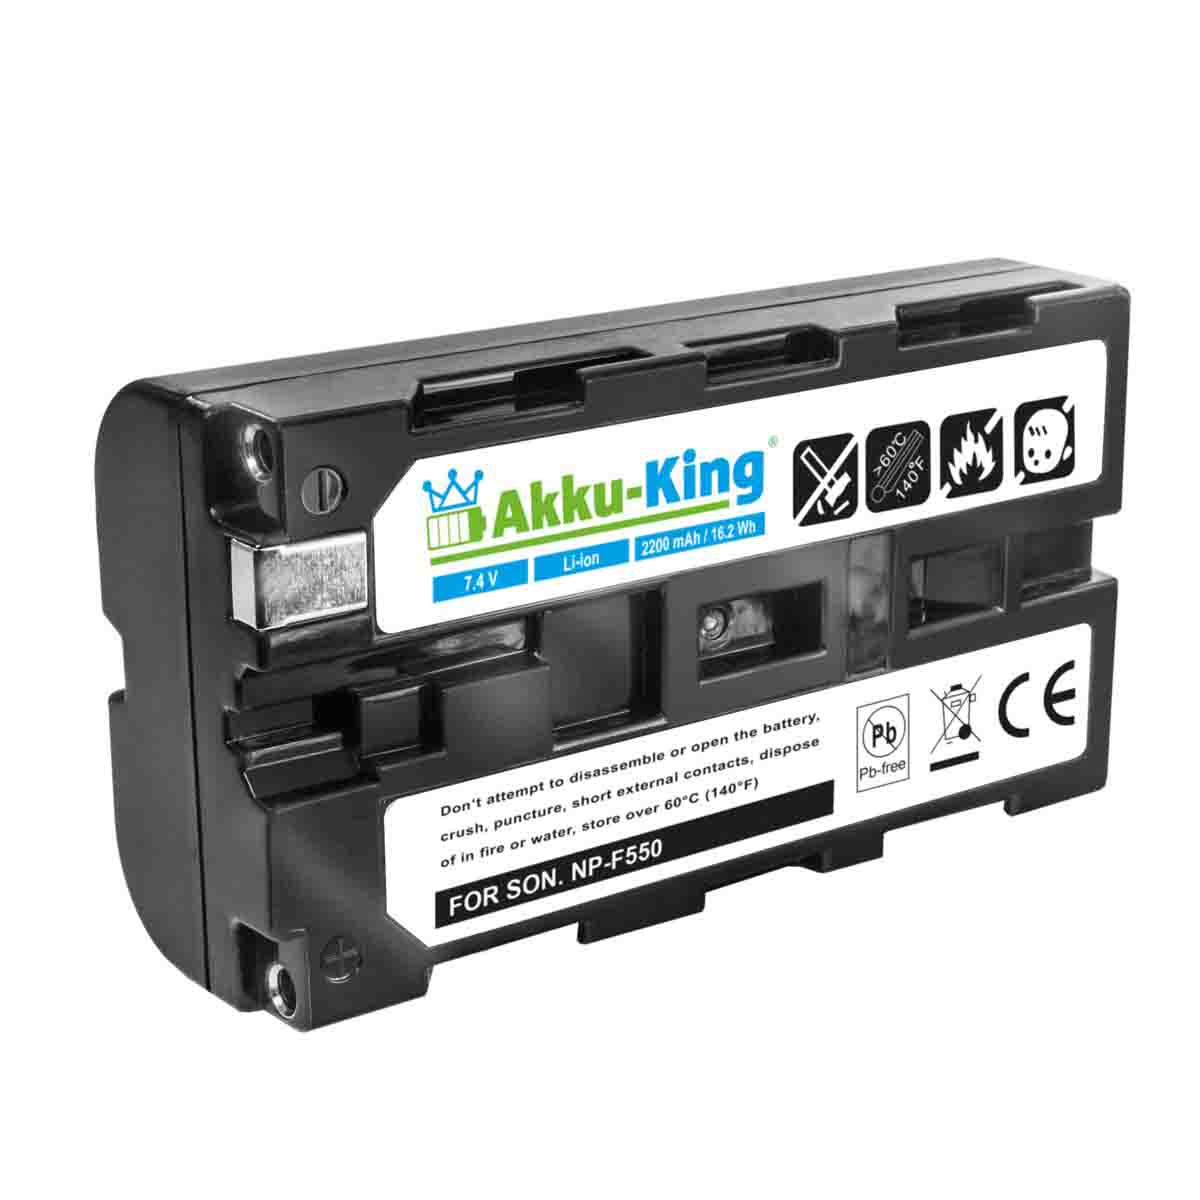 Geräte-Akku, 2200mAh kompatibel Li-Ion LT2F2200 Akku mit Volt, Futaba AKKU-KING 7.4